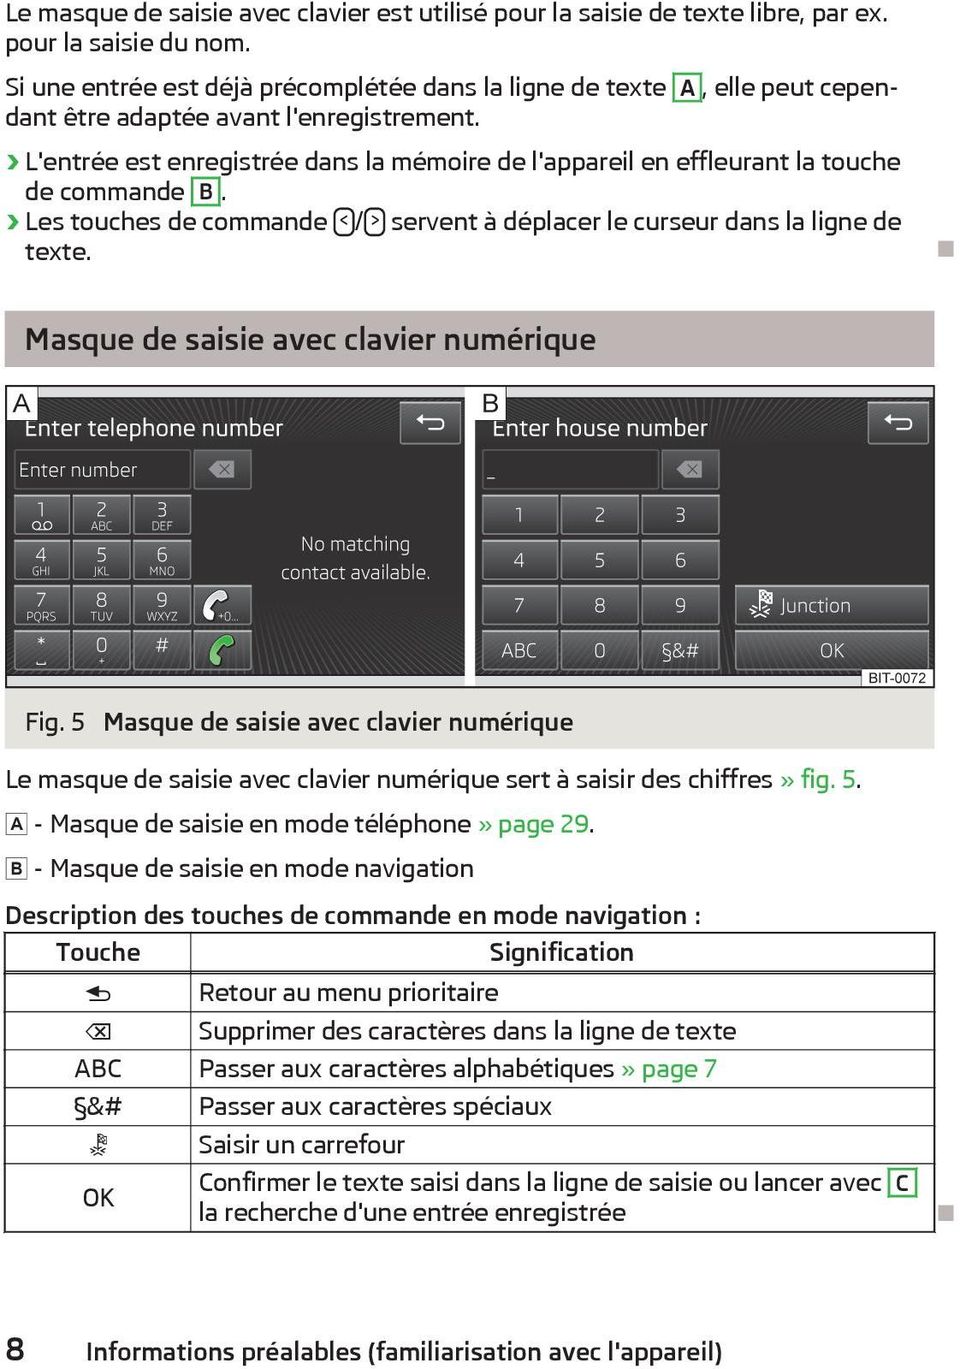 L'entrée est enregistrée dans la mémoire de l'appareil en effleurant la touche de commande B. Les touches de commande < / > servent à déplacer le curseur dans la ligne de texte.